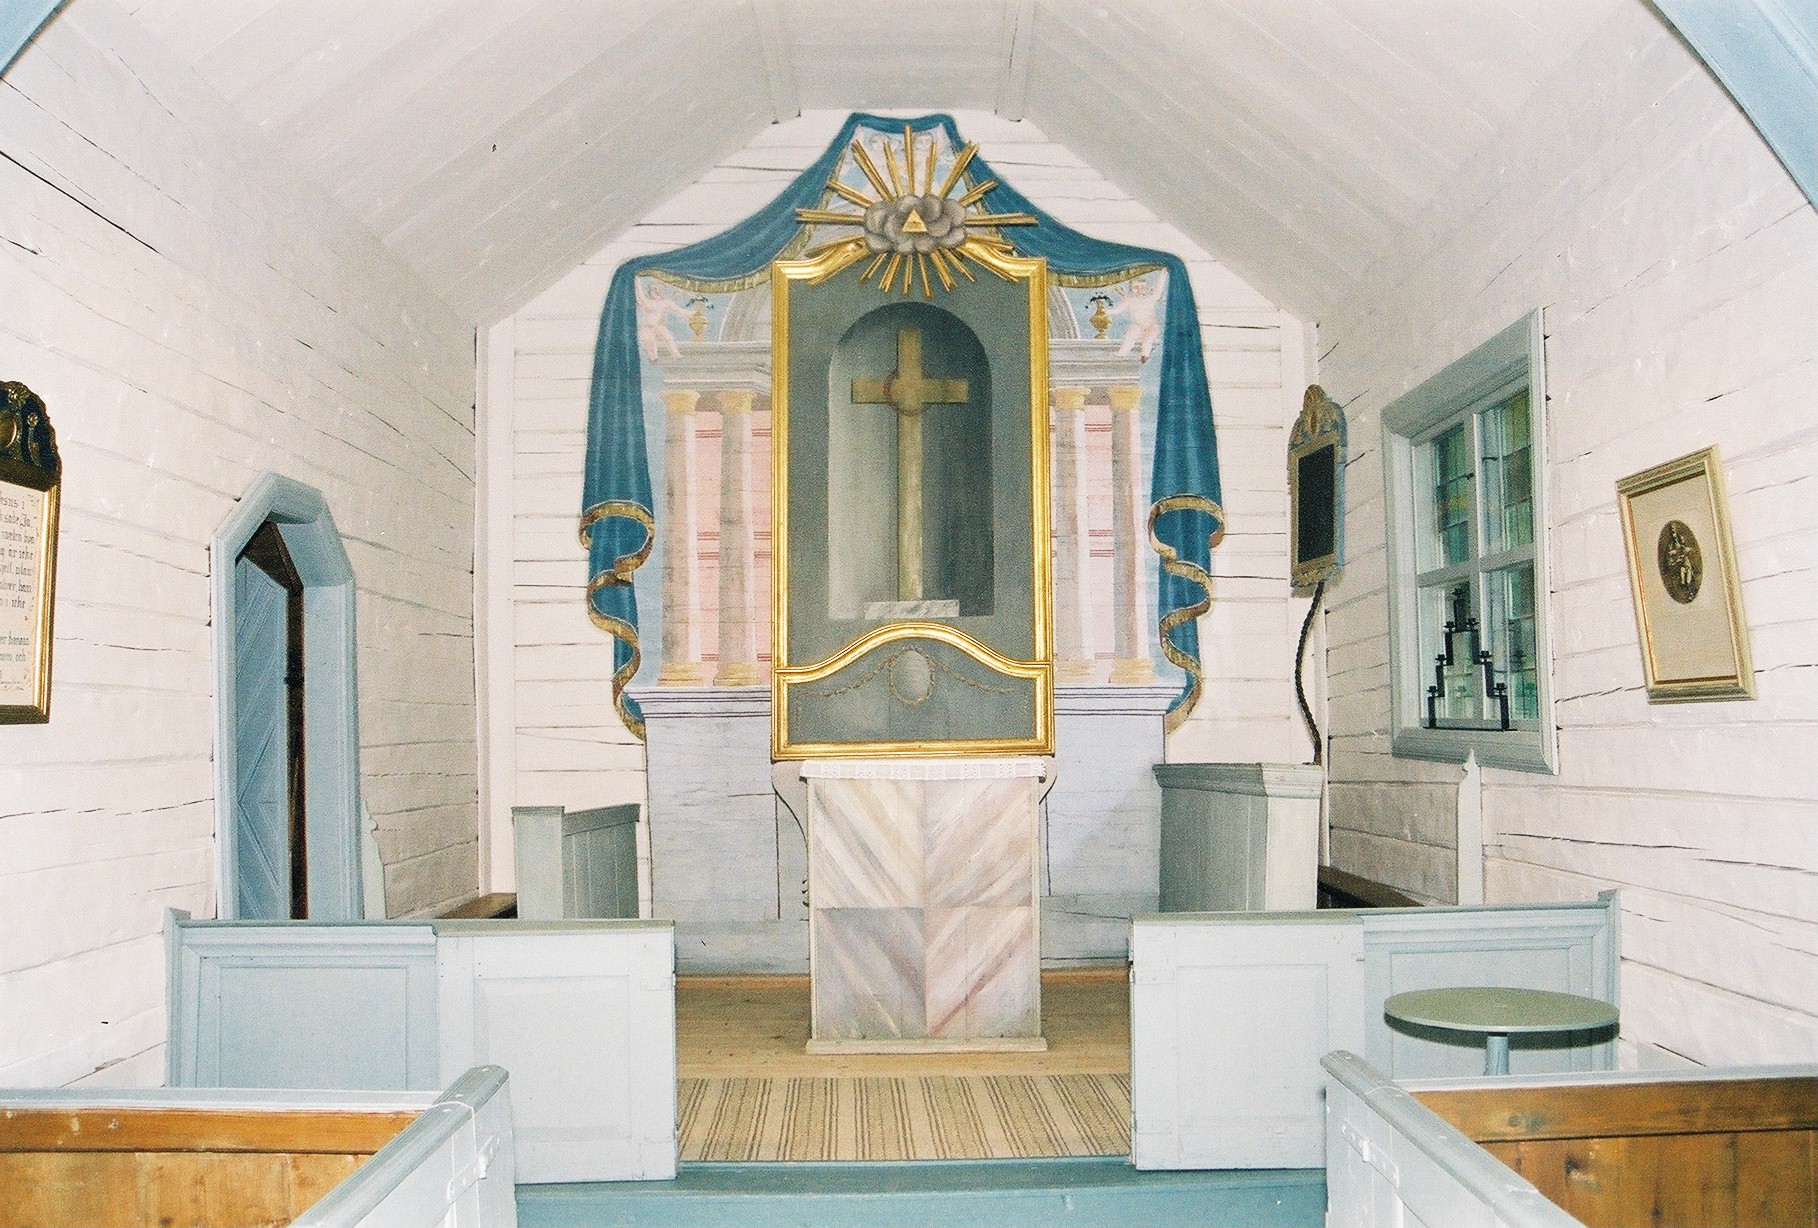 Vikens kapell, interiör, kyrkorummet, koret. 

Bilderna är tagna av Martin Lagergren & Emelie Petersson vid Jämtlands läns museum i samband med inventeringen, 2004-2005. 